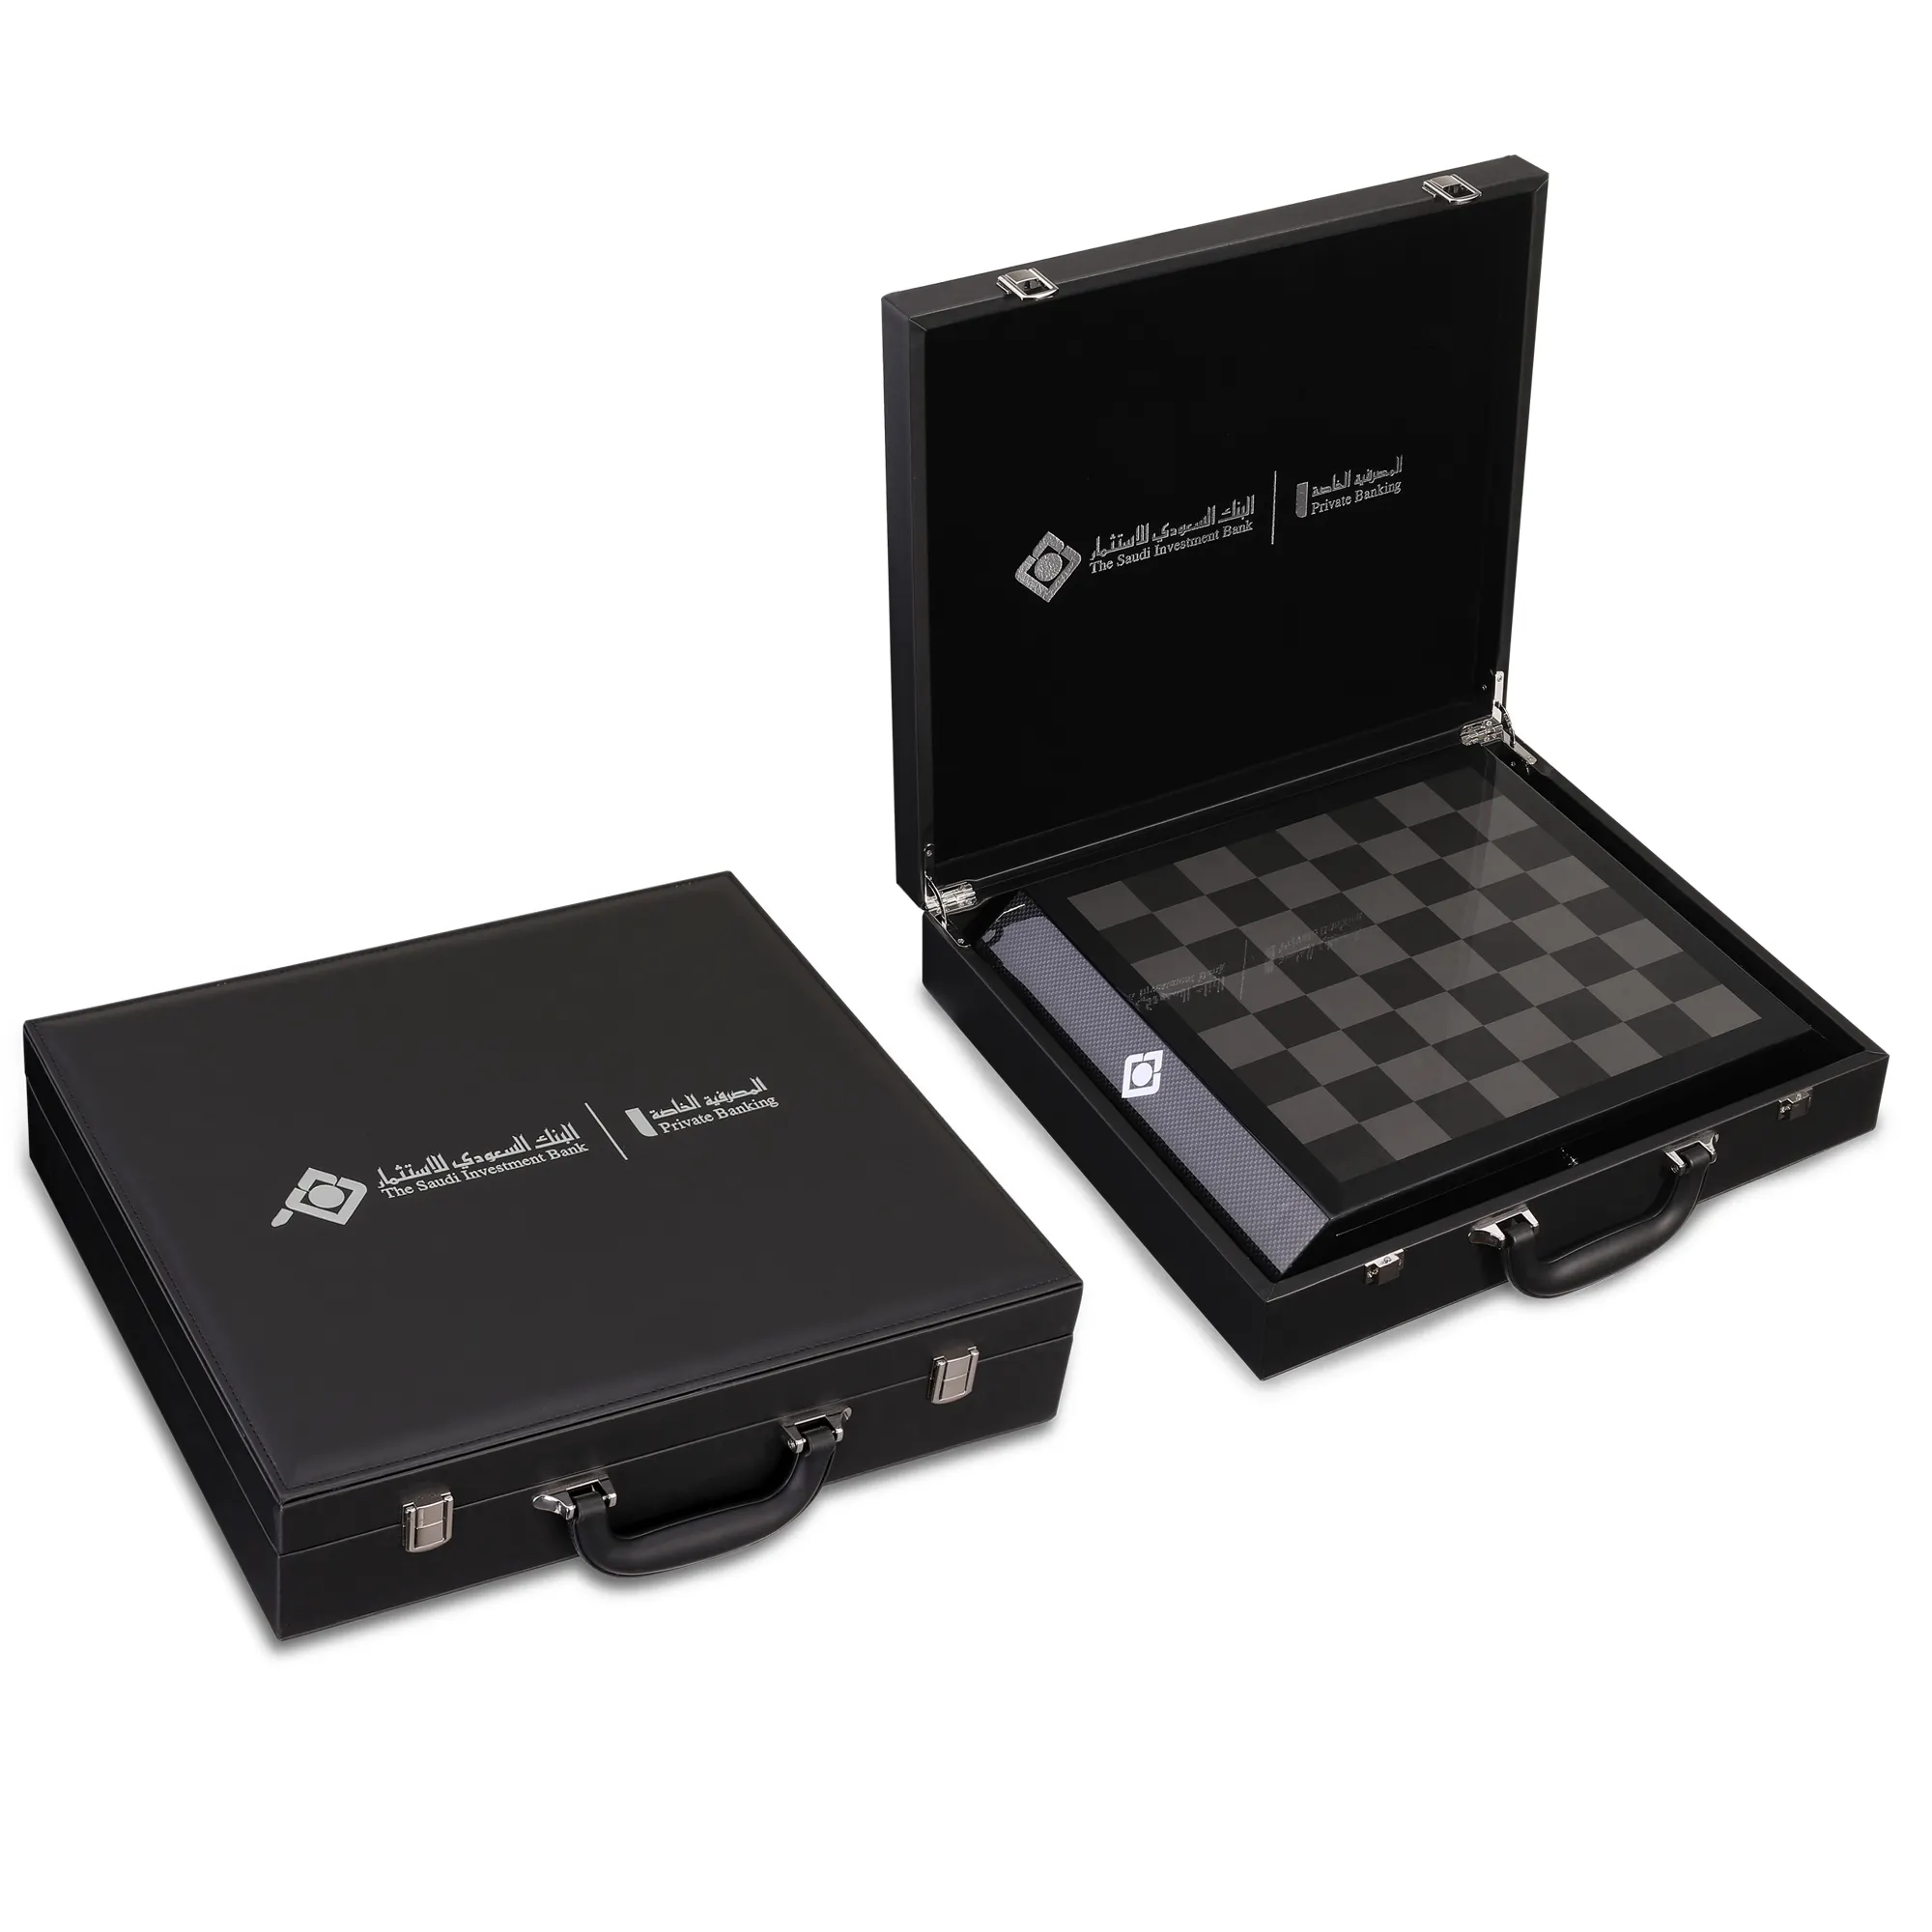 Innovative Brand Luxury Metal Chess com Gift Box Embalagem Etiqueta Personalizada com Alta Qualidade Chess Gift Box